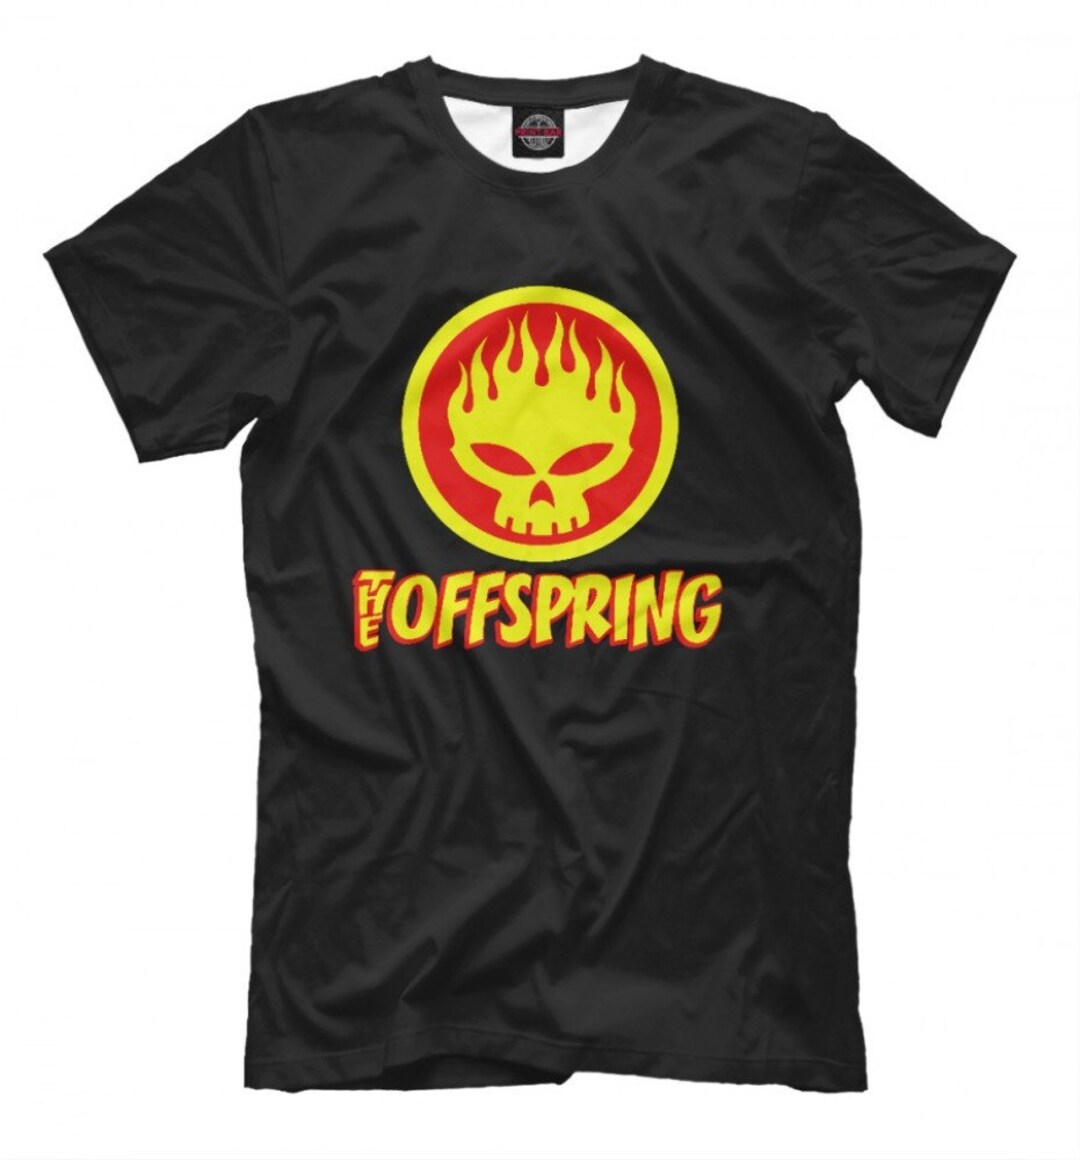 The Offspring Fire Logo T-shirt, Punk Rock Tee, Men's Women's All Sizes ...